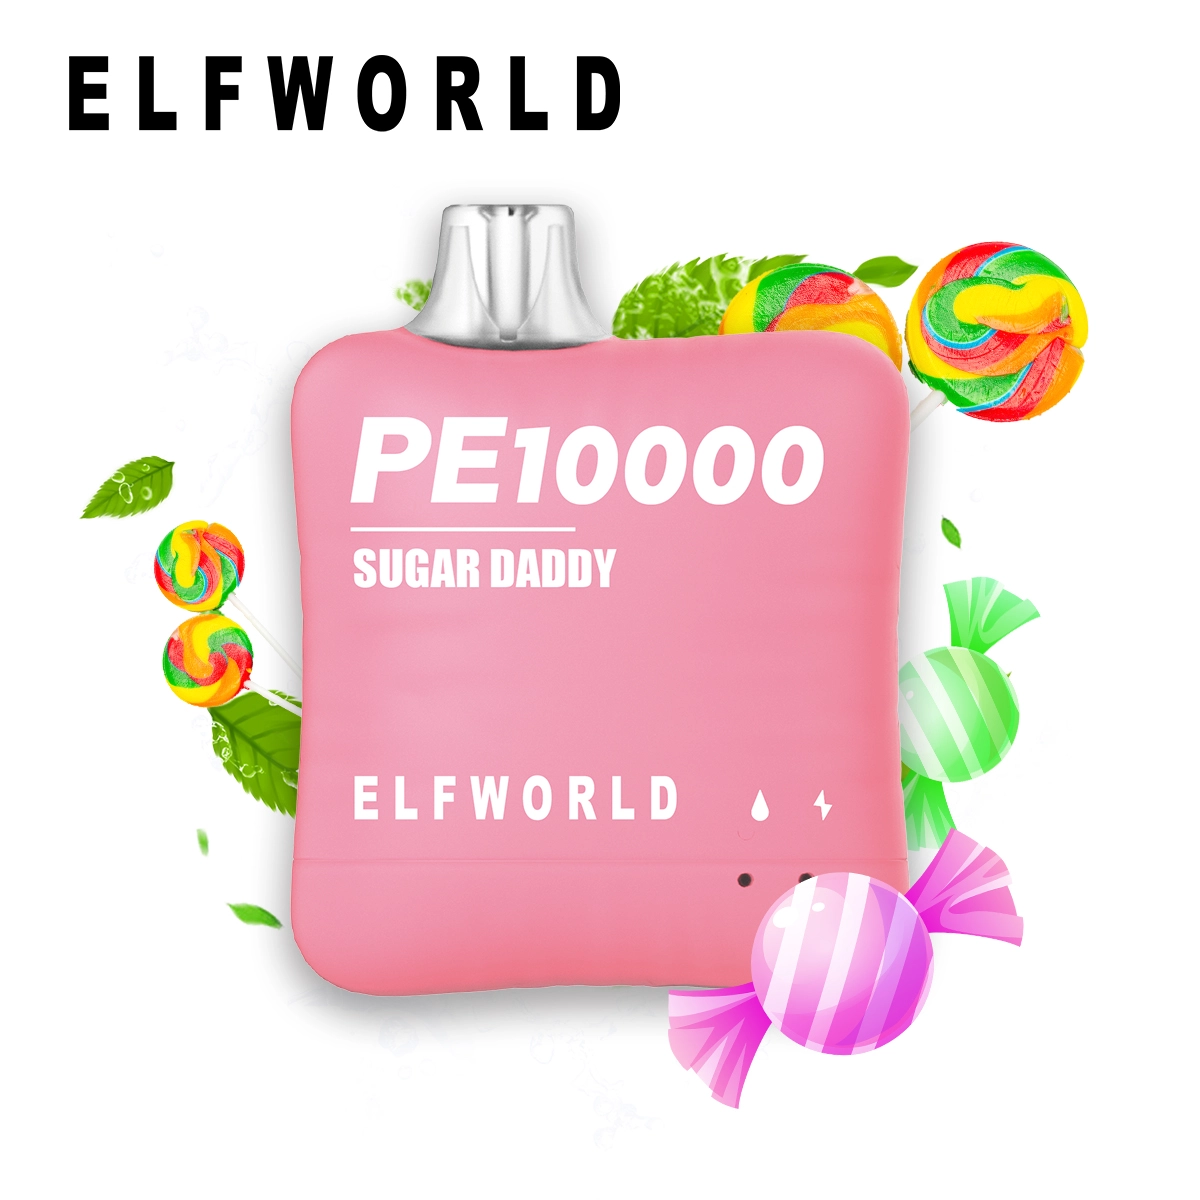 Elf World PE 10000 Sugar Daddy